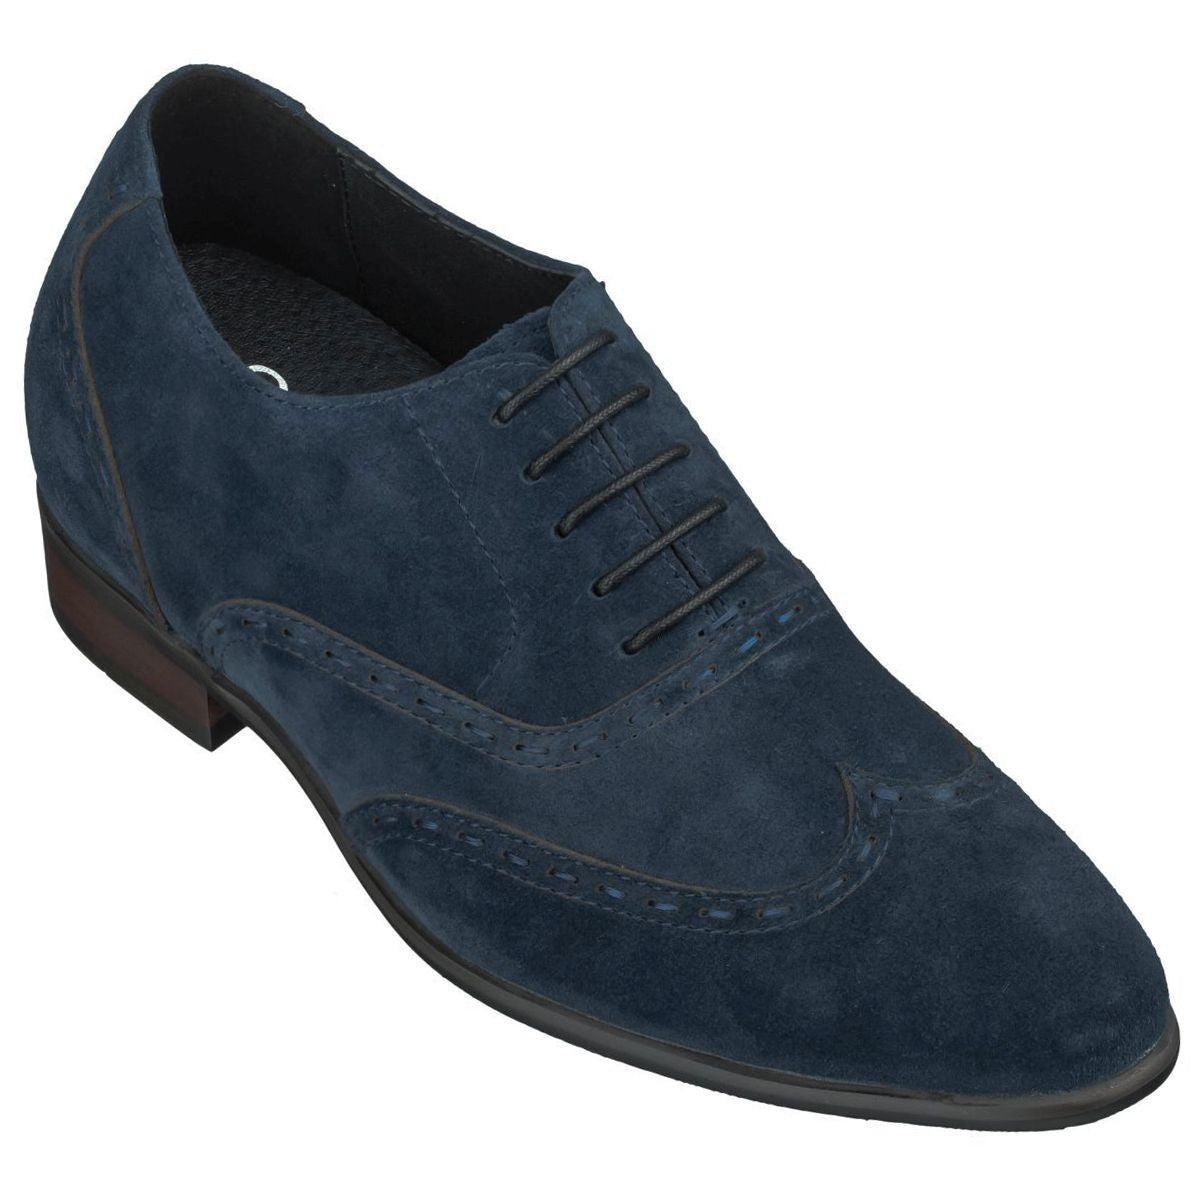 CALTO Navy Blue Dress Shoes - TallMenShoes.com – Tallmenshoes.com